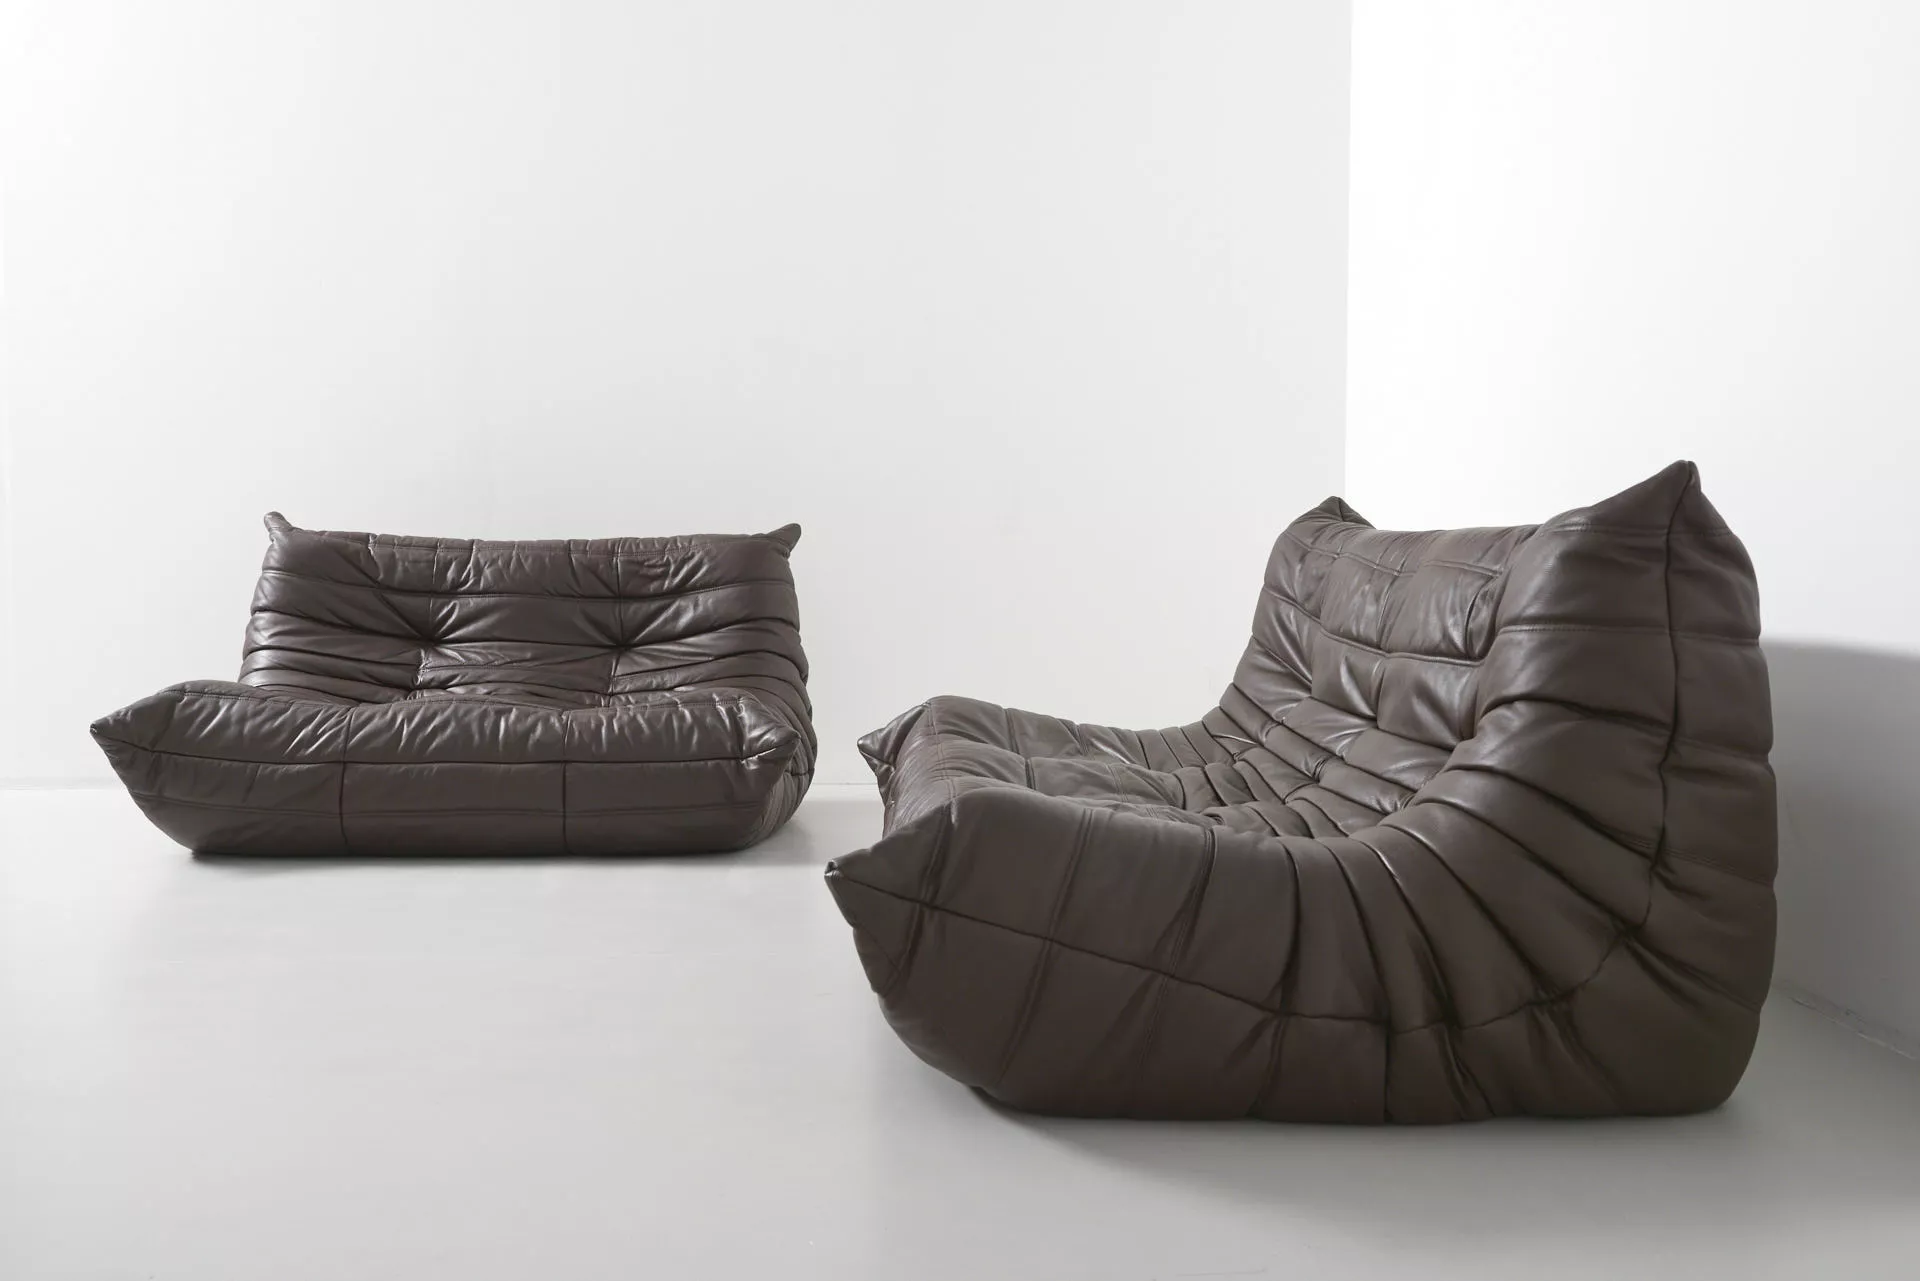 Ligne Roset Togo sofa suite, brown leather, Pre-used design